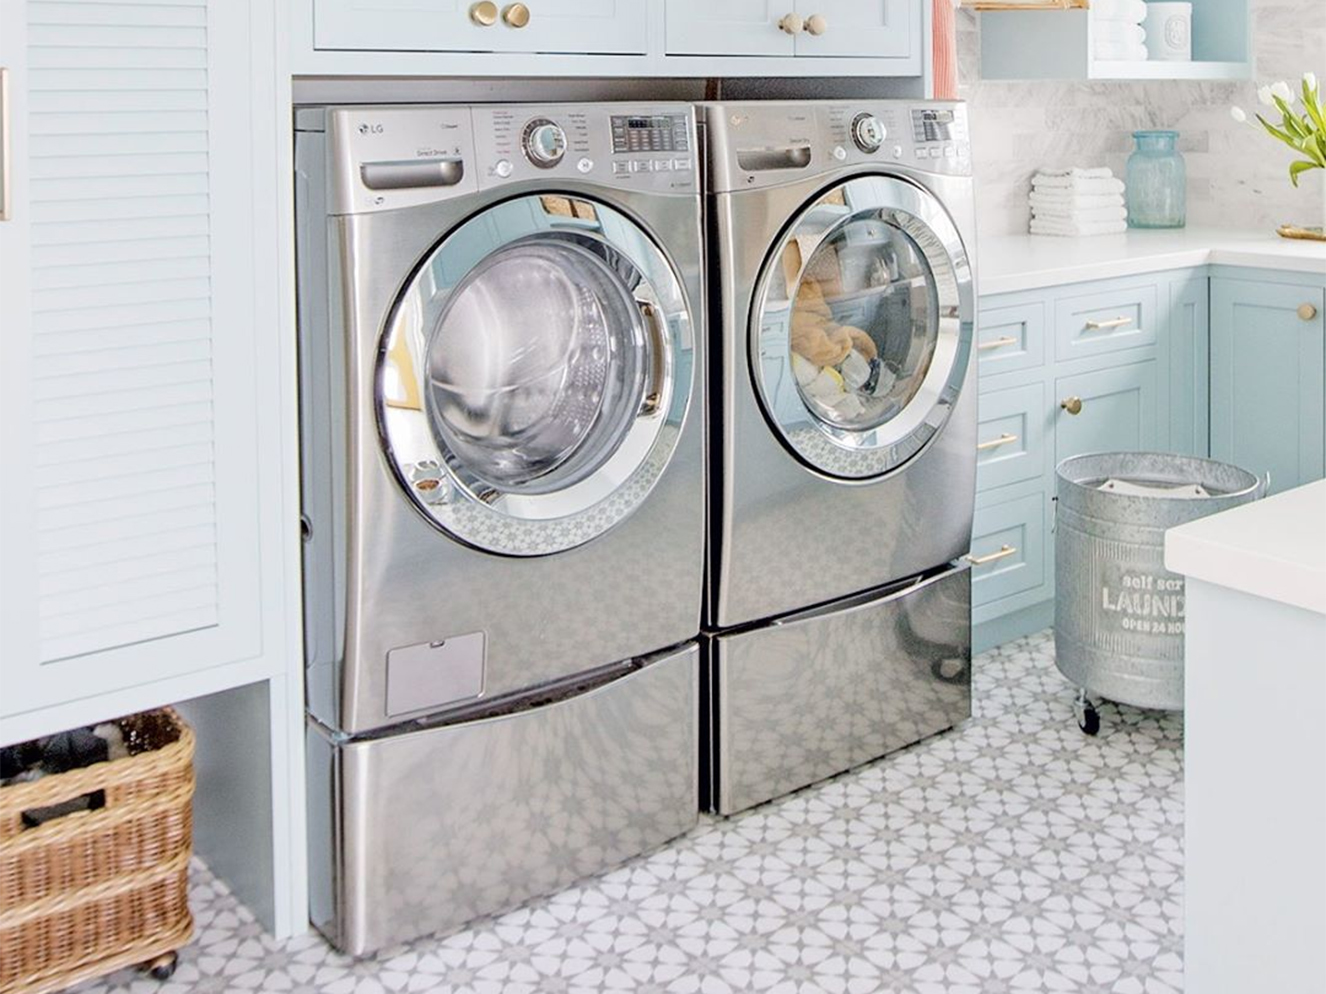  Bli inspirert av disse 10 fantastiske vaskeriene for å sette opp ditt